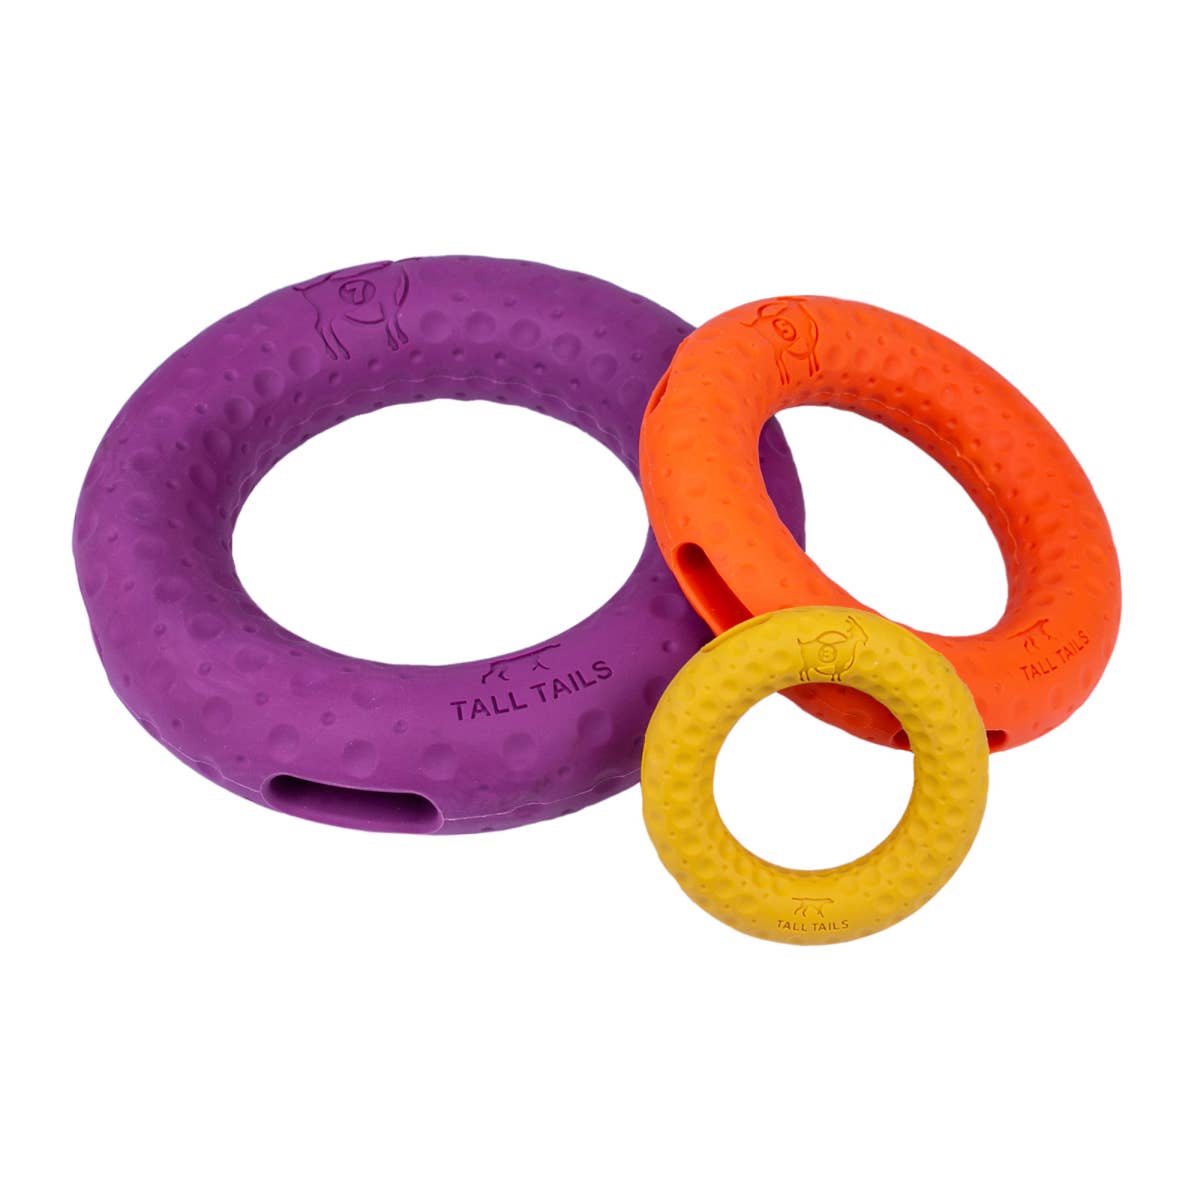 GOAT Sport Ring Dog Toy - Medium